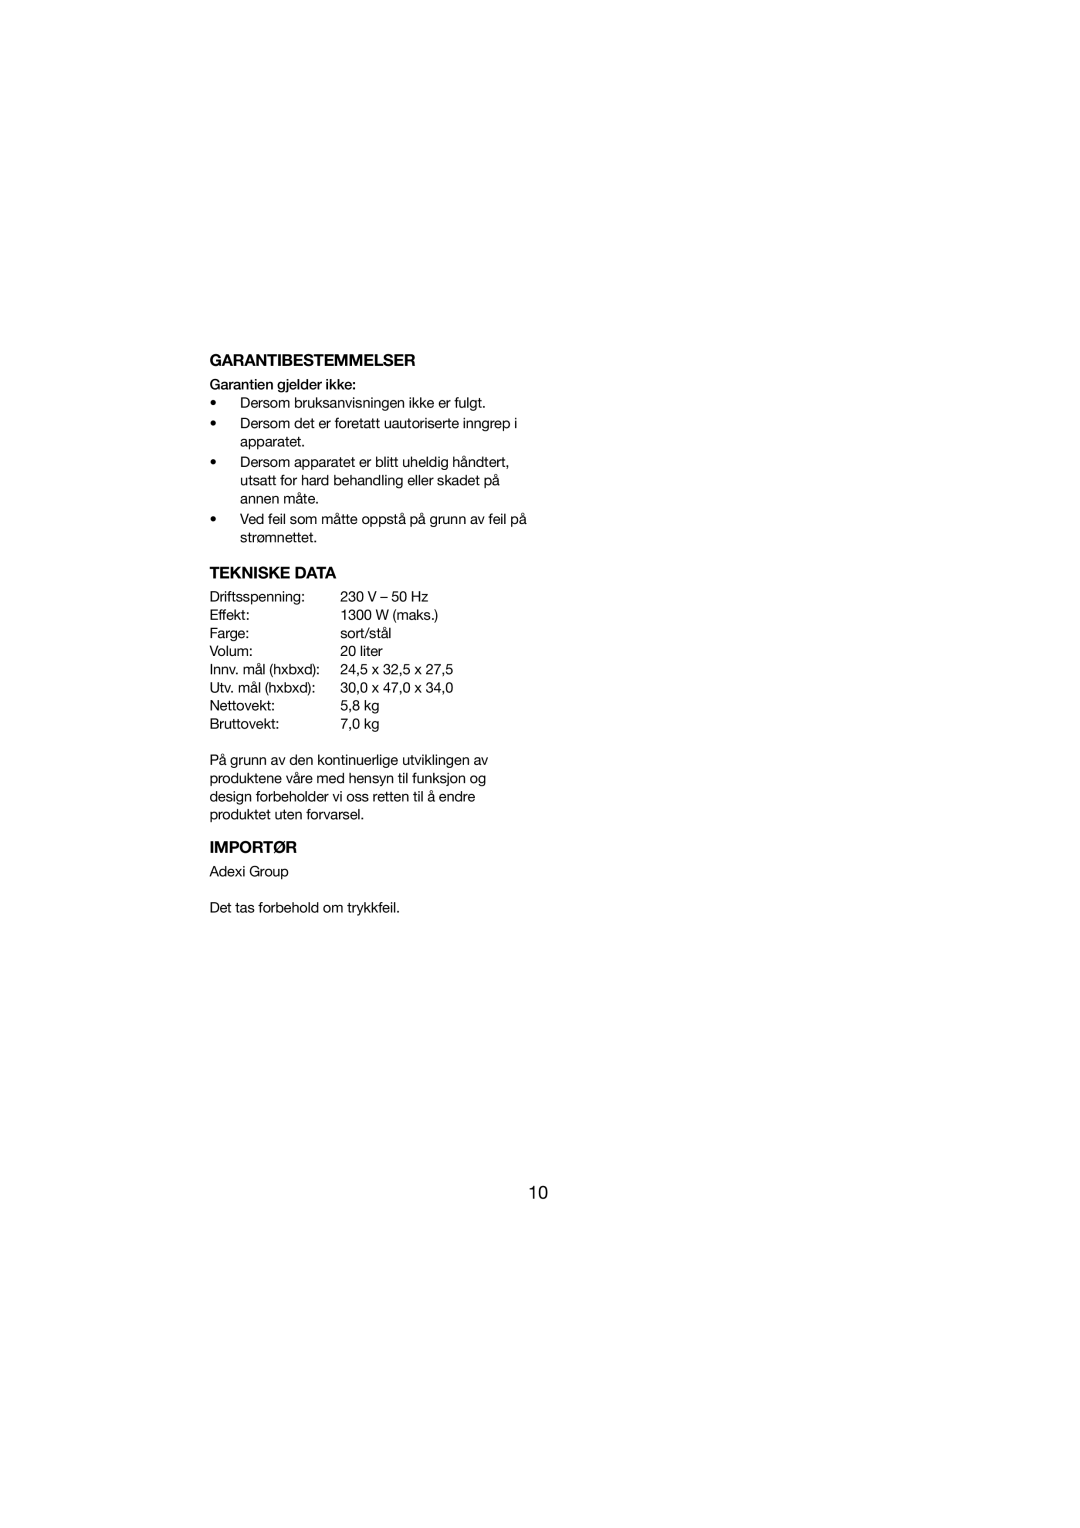 Melissa 251-003 manual Garantibestemmelser, Tekniske Data, Importør 